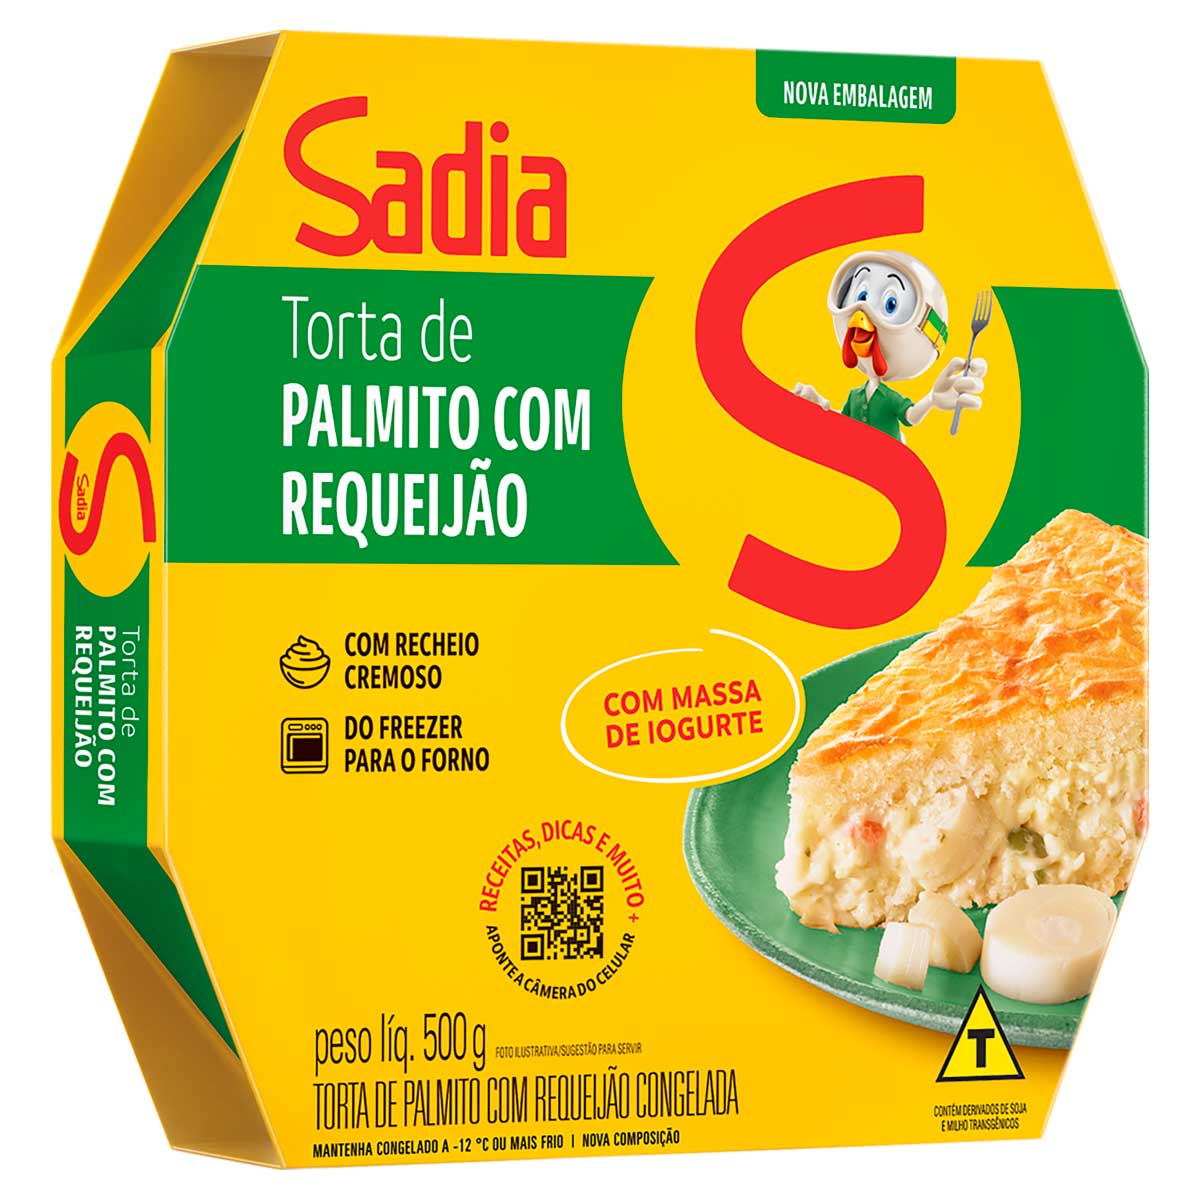 torta-com-massa-de-iogurte-sadia-de-palmito-com-requeijao-500g-1.jpg